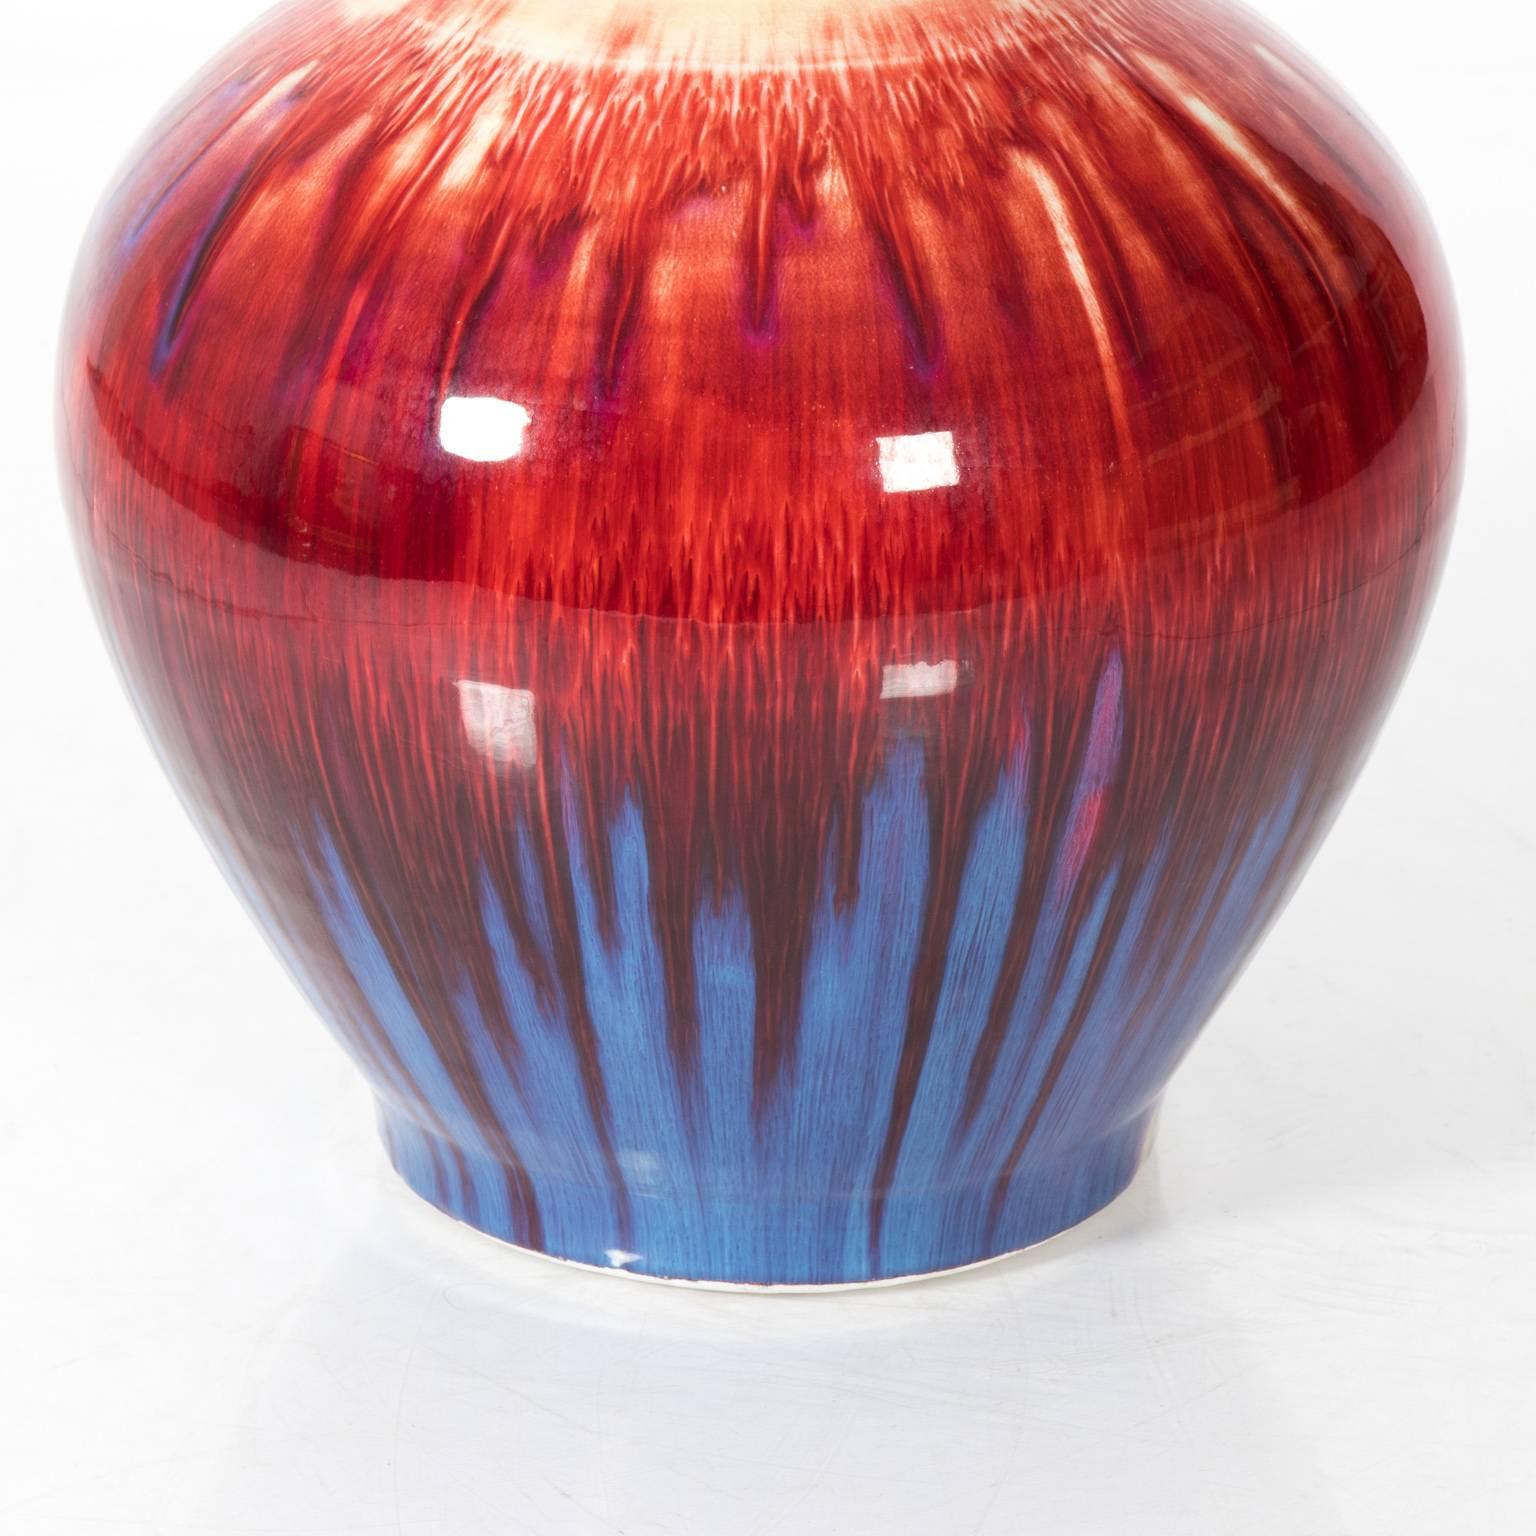 Mid-Century Modern Midcentury Pottery Vase